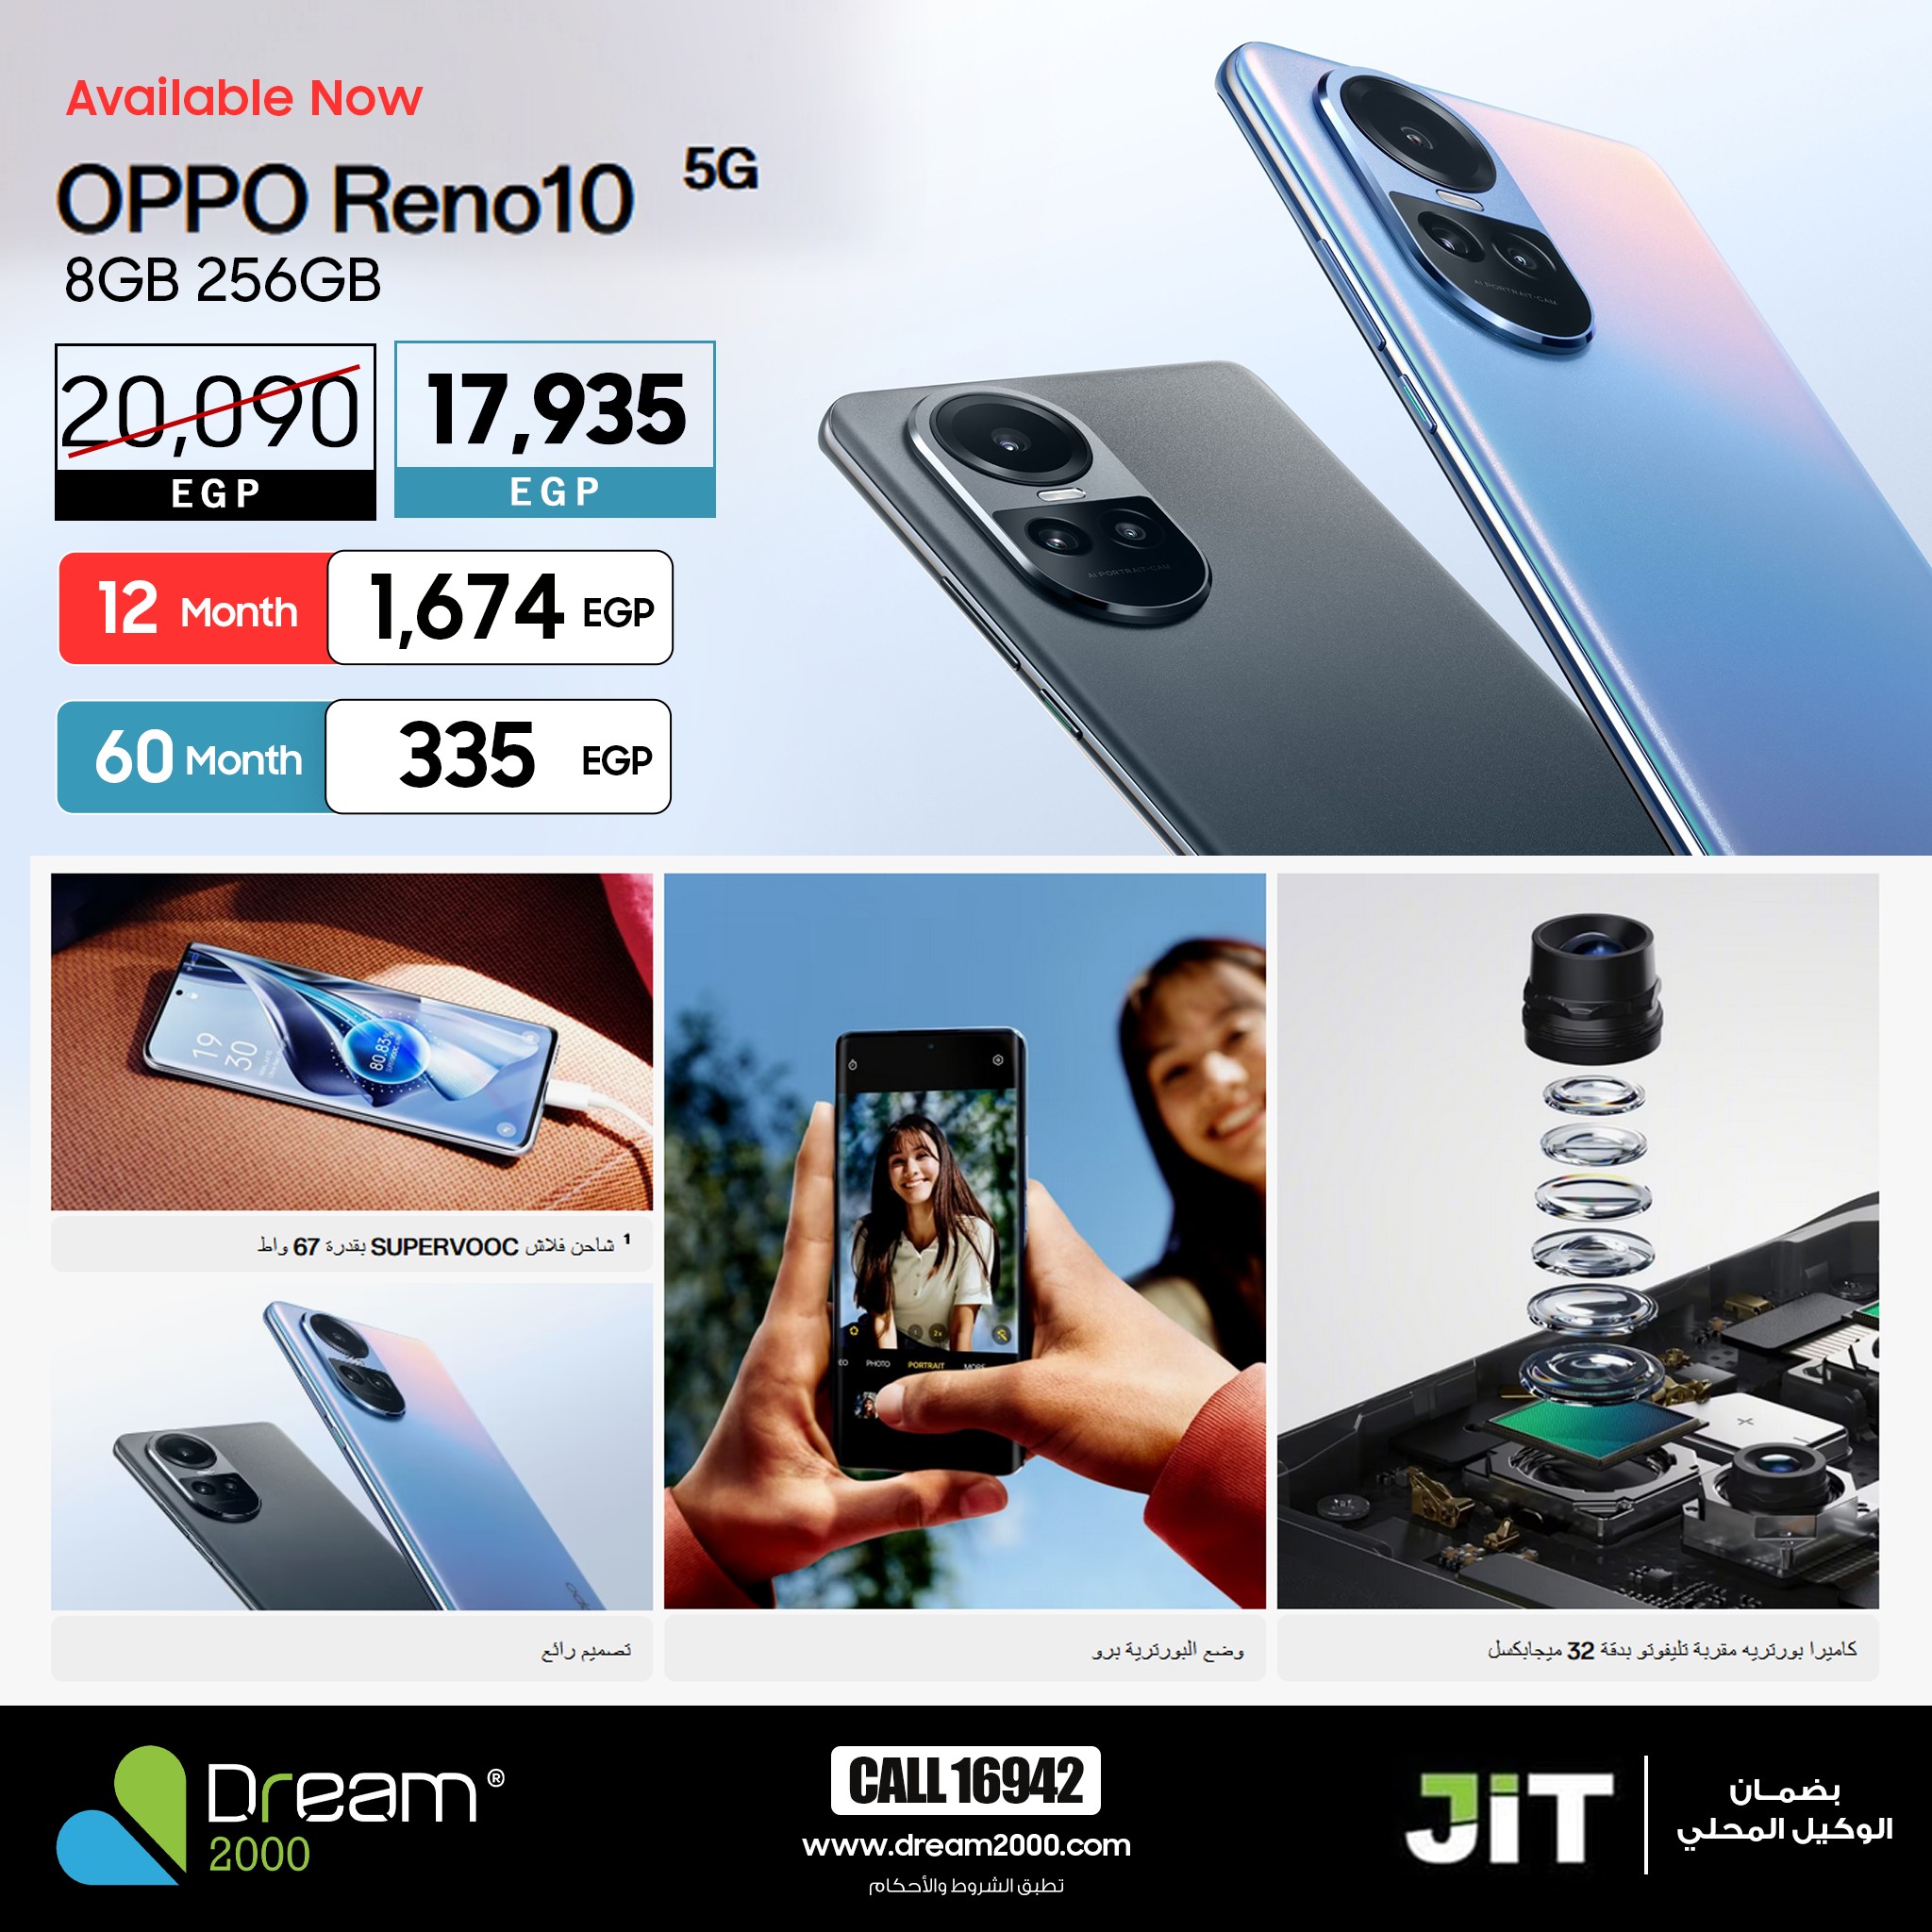 مواصفات و سعر الهاتف oppo reno 10 في مصر وأماكن الشراء